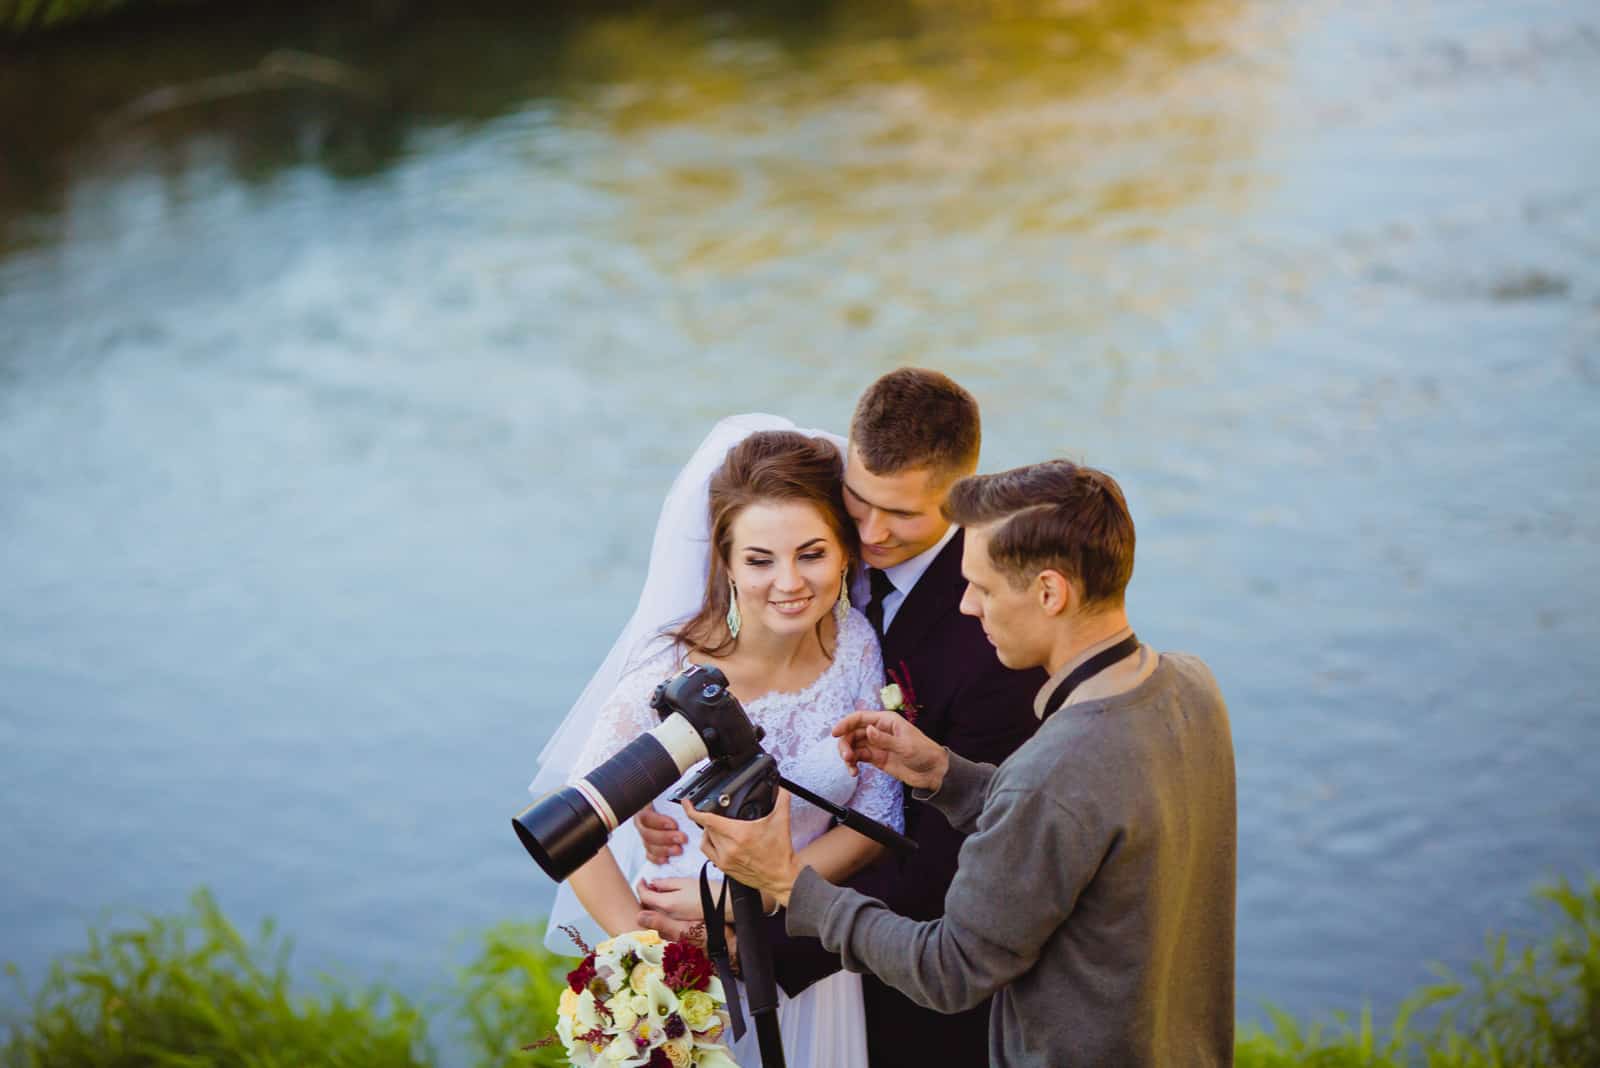 Der Fotograf, der Braut und Bräutigam zeigt, hatte gerade Fotos gemacht (2)